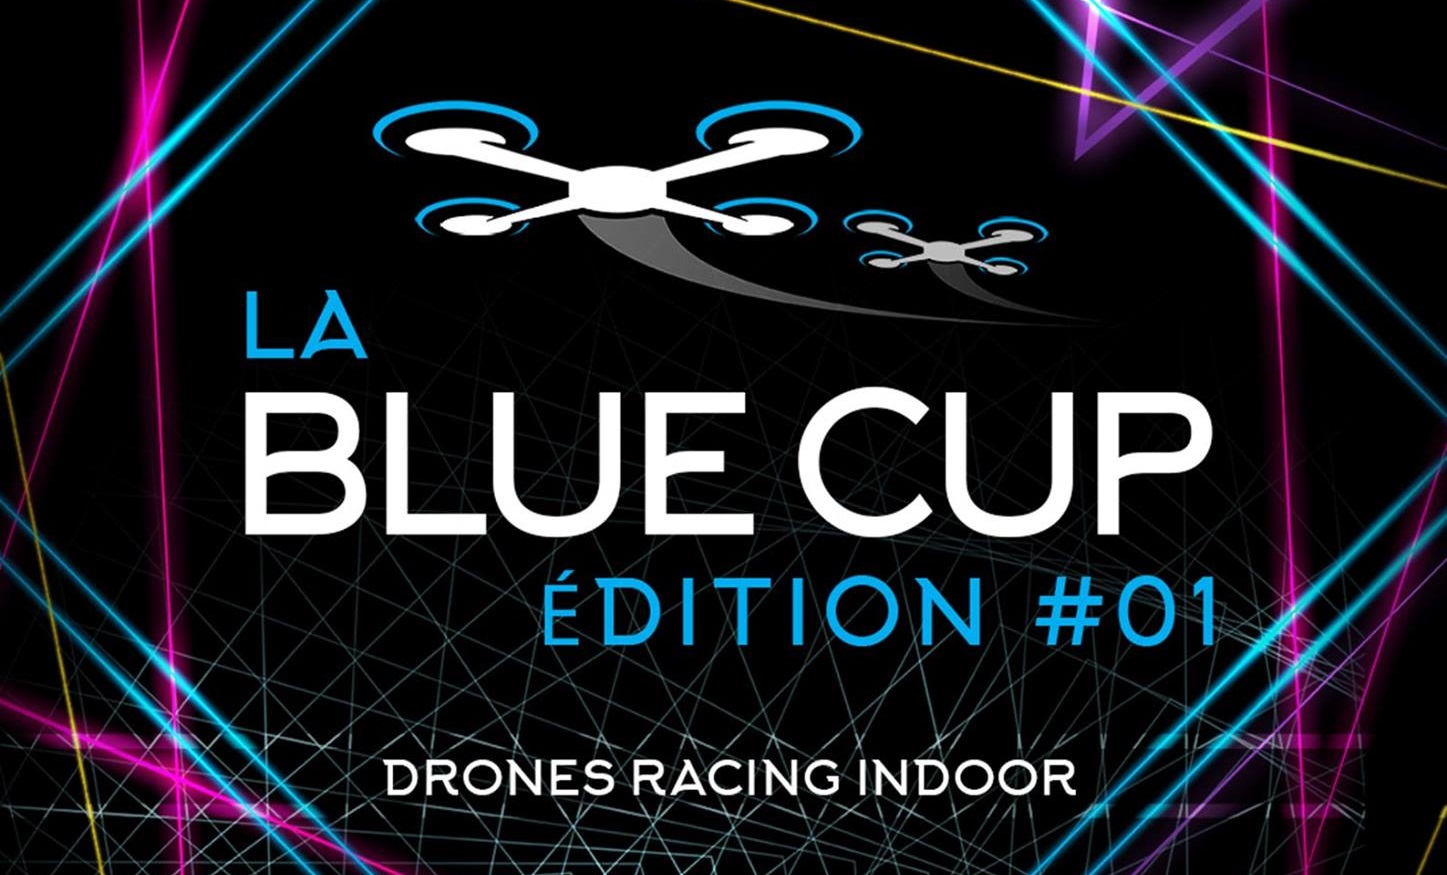 La Blue Cup édition #01